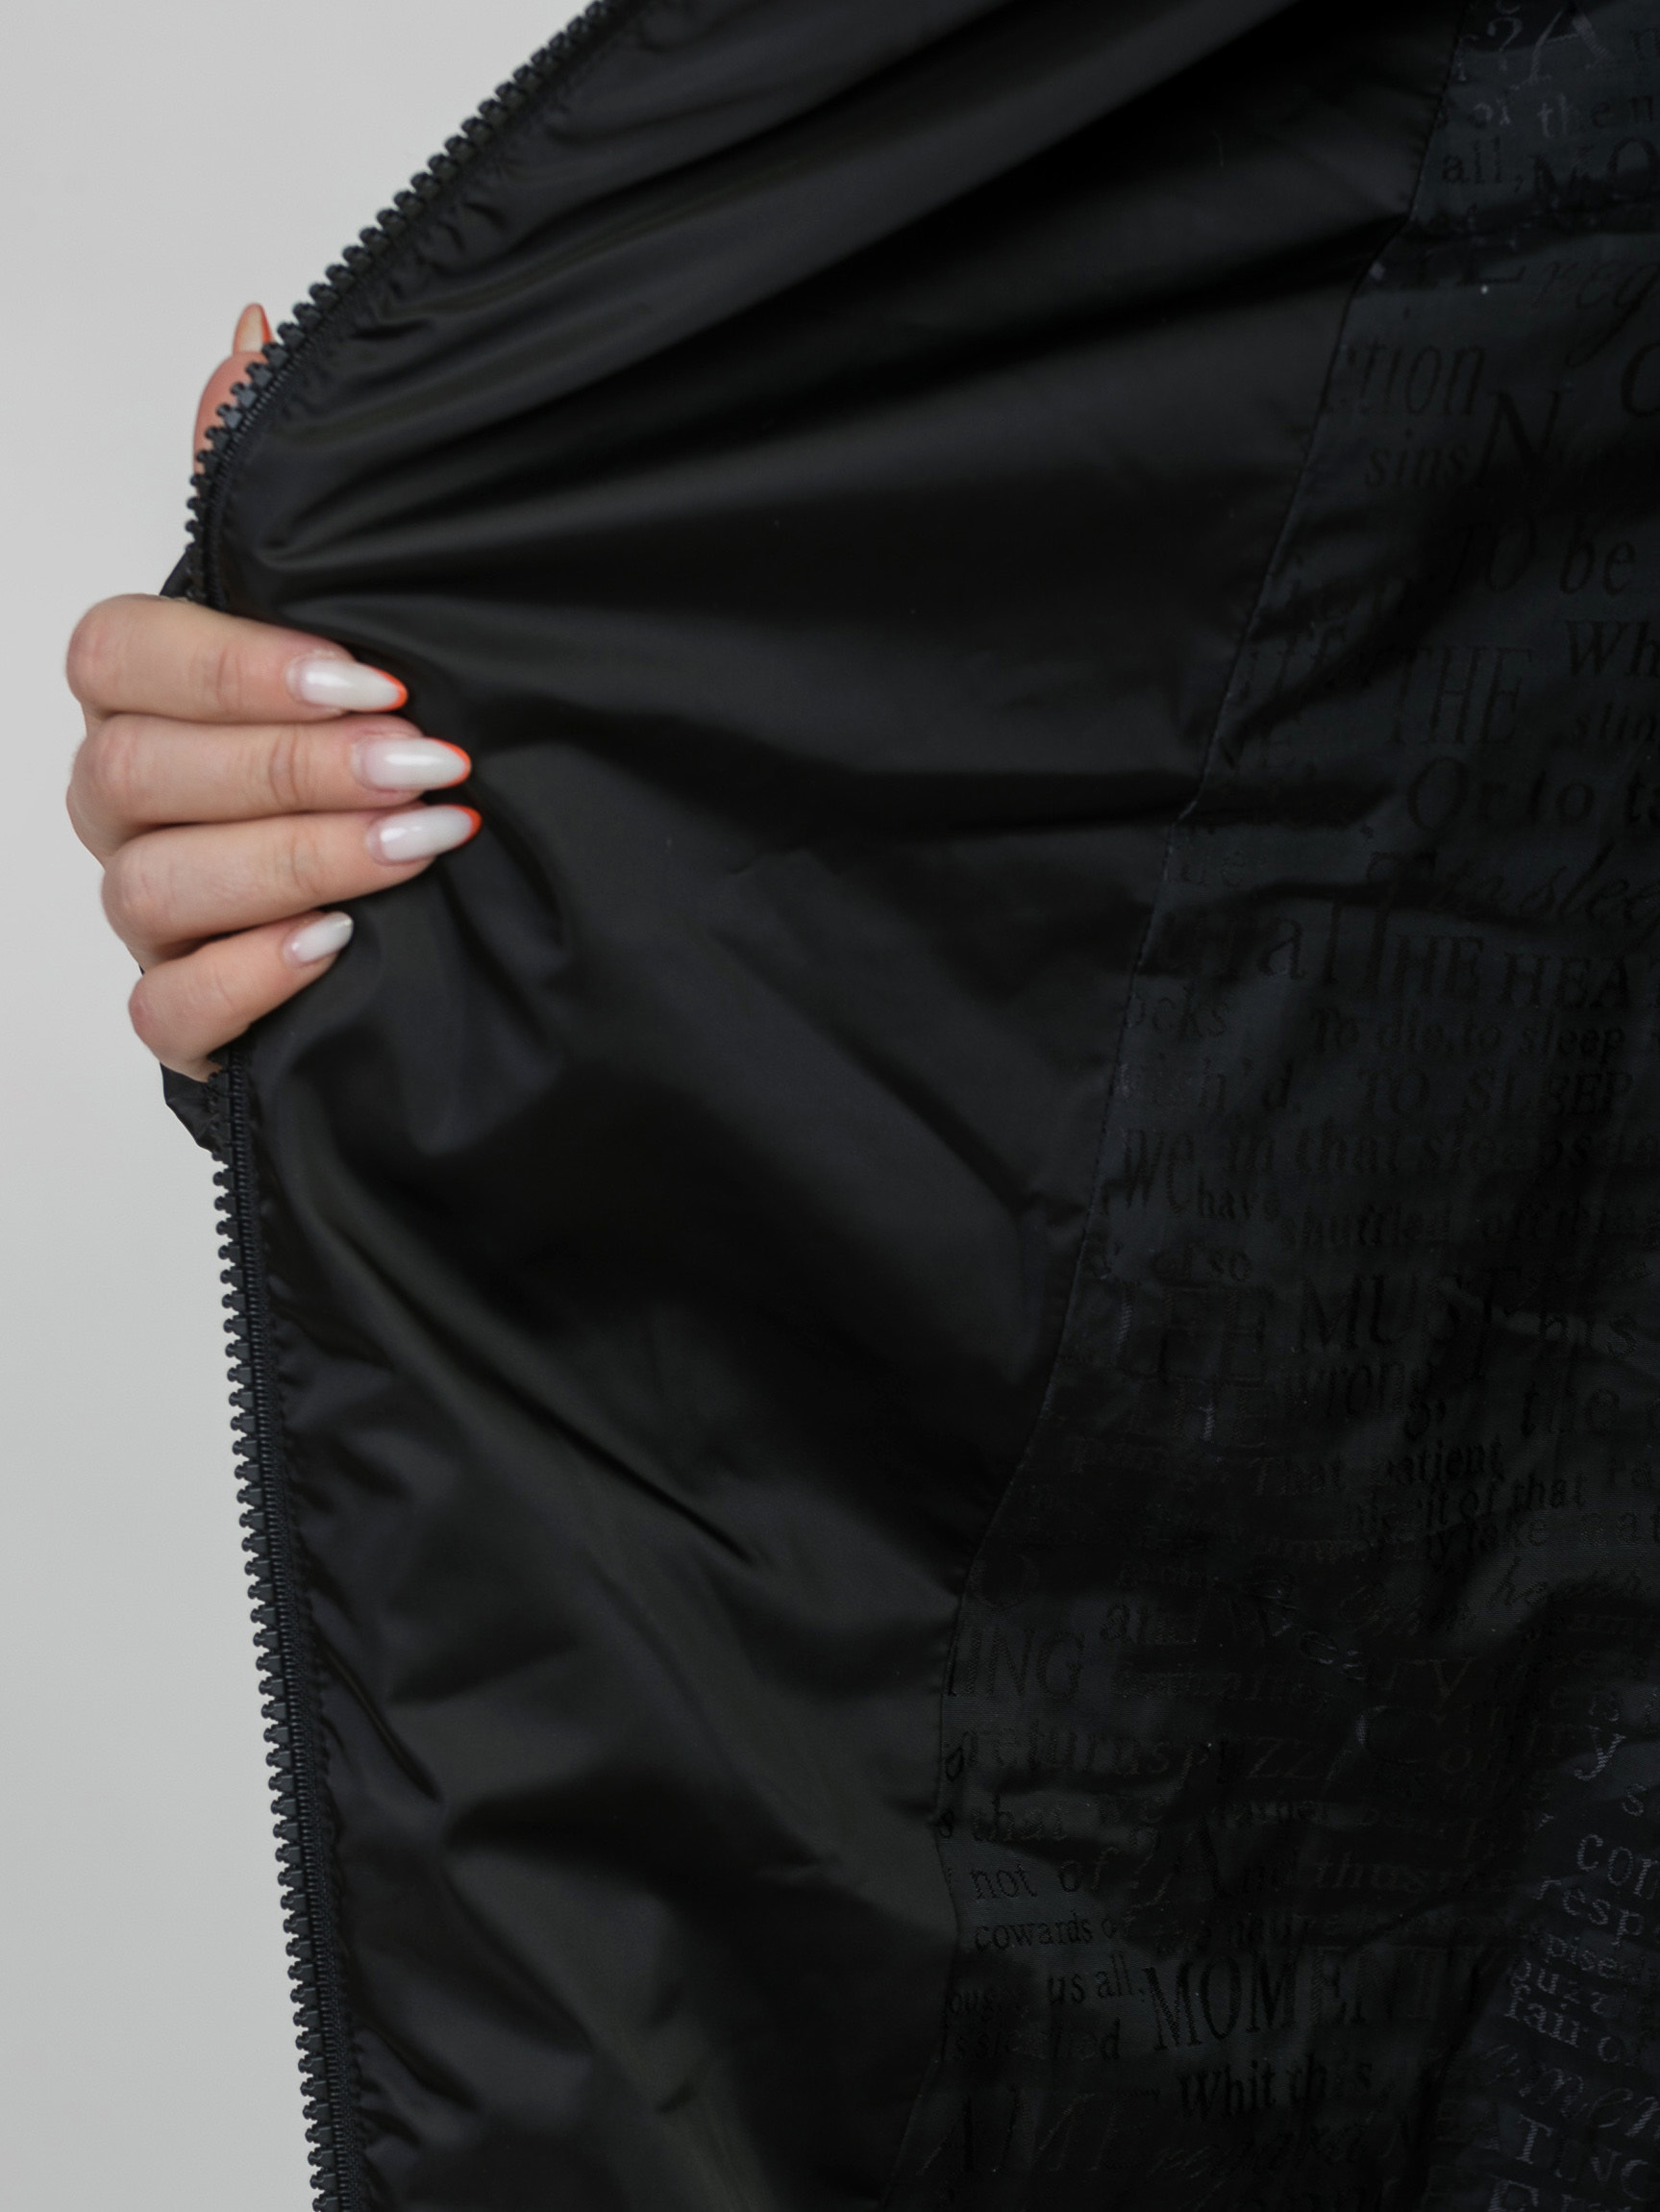 Пальто смесовое астраган+текстиль с капюшоном отделка из меха песца 52818